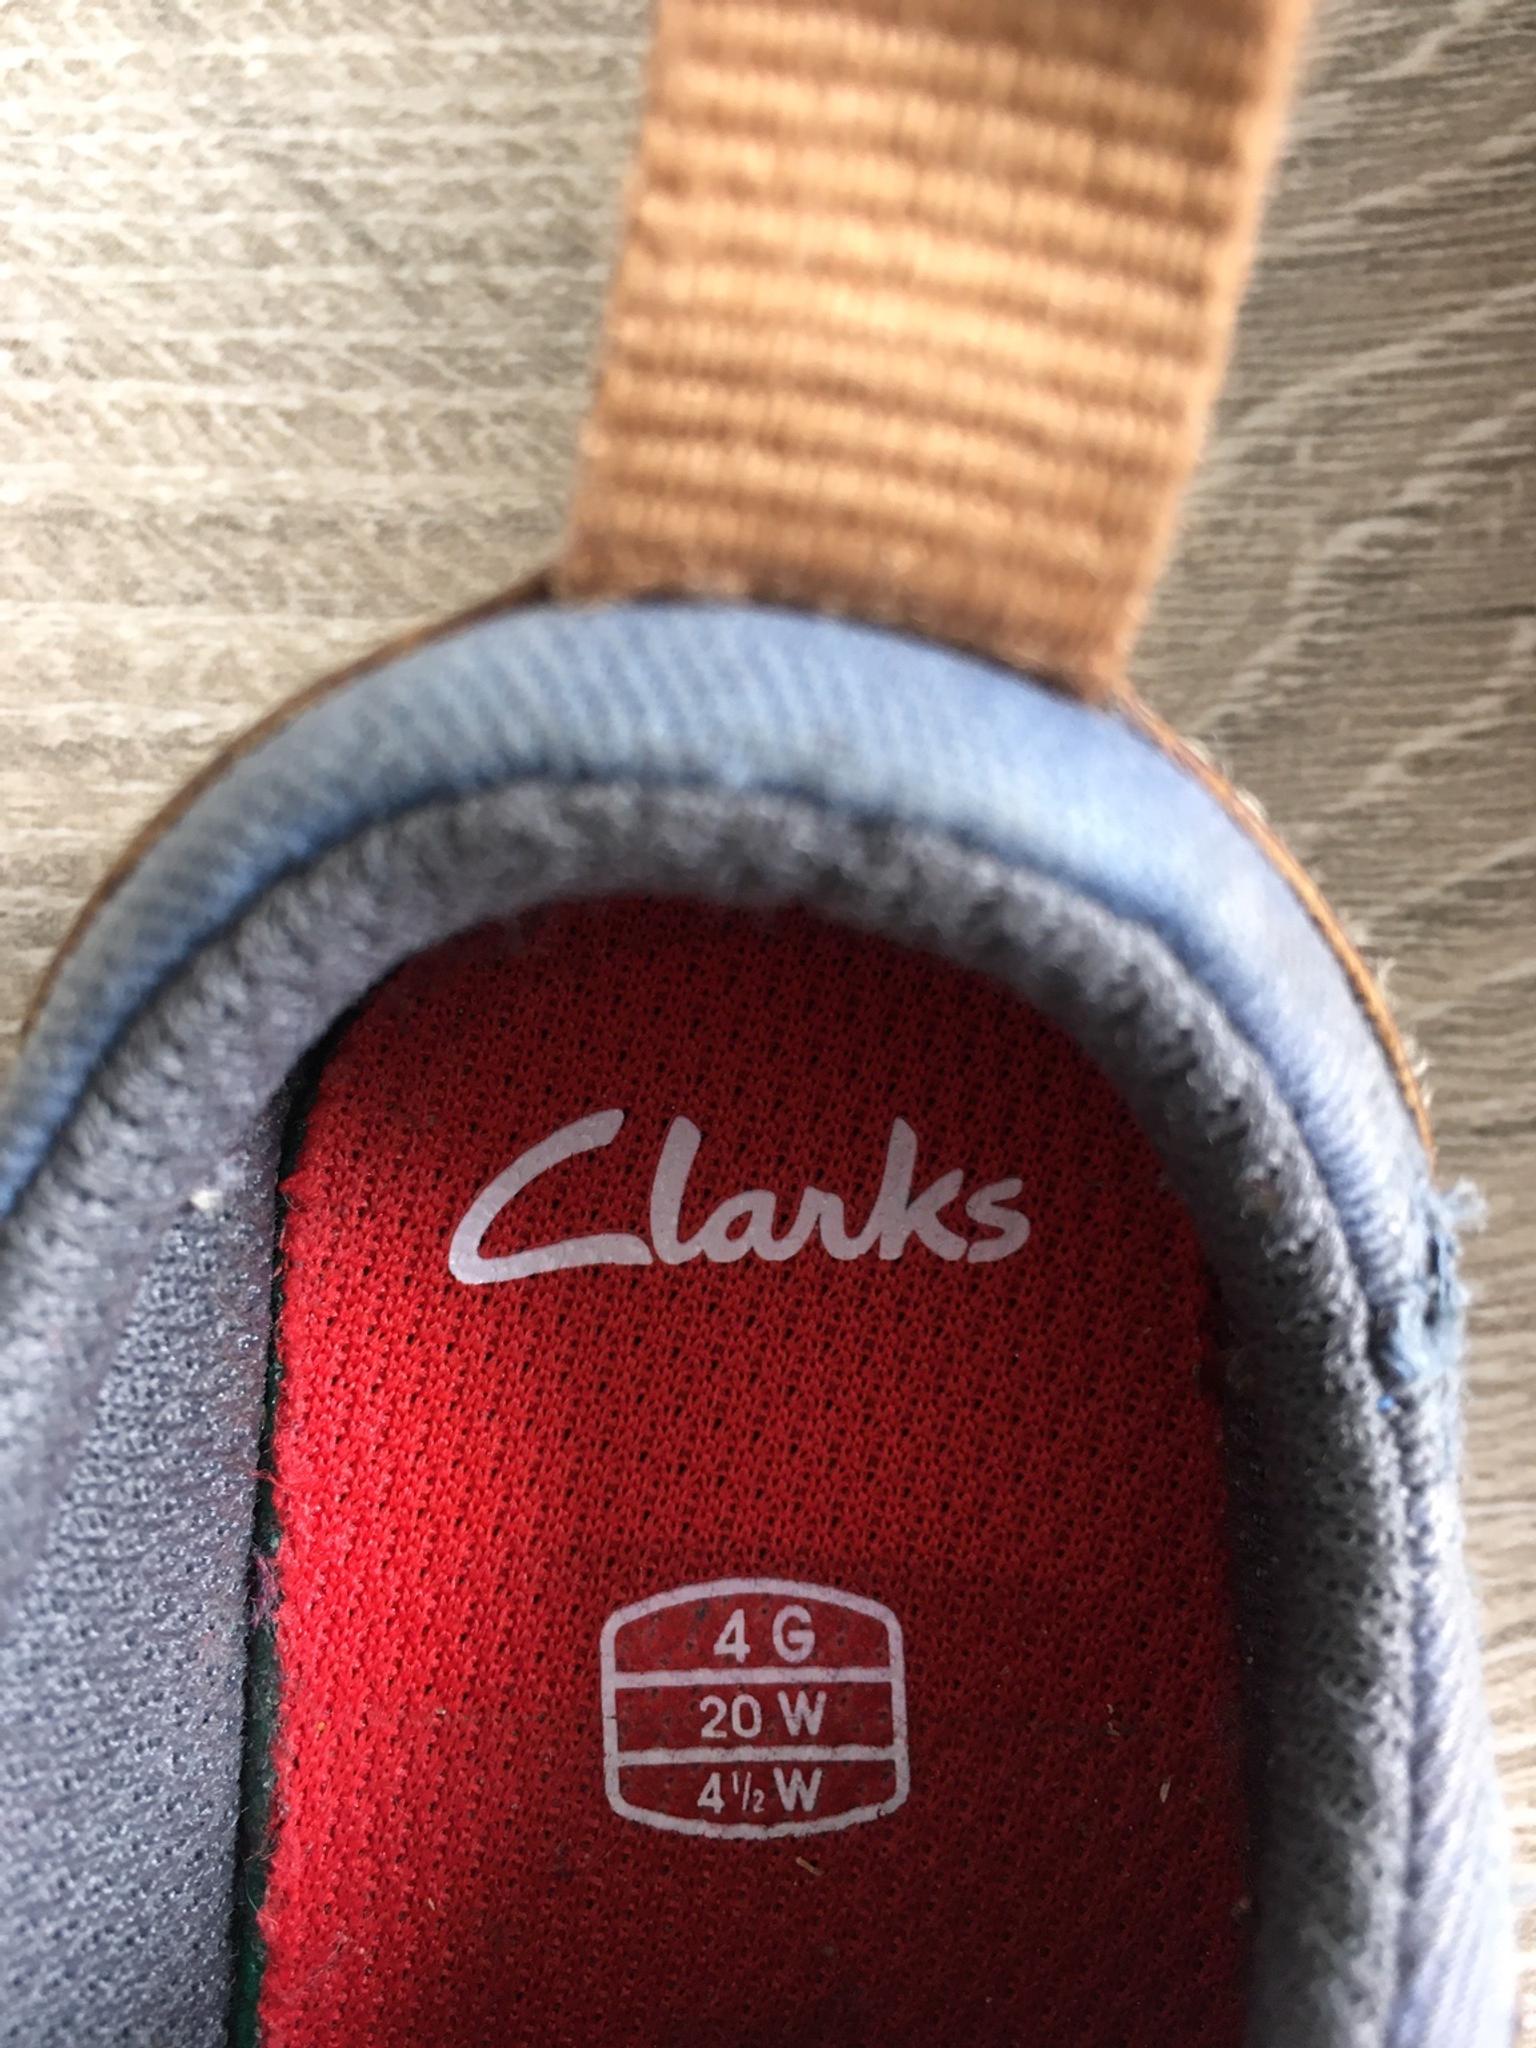 clarks 4g